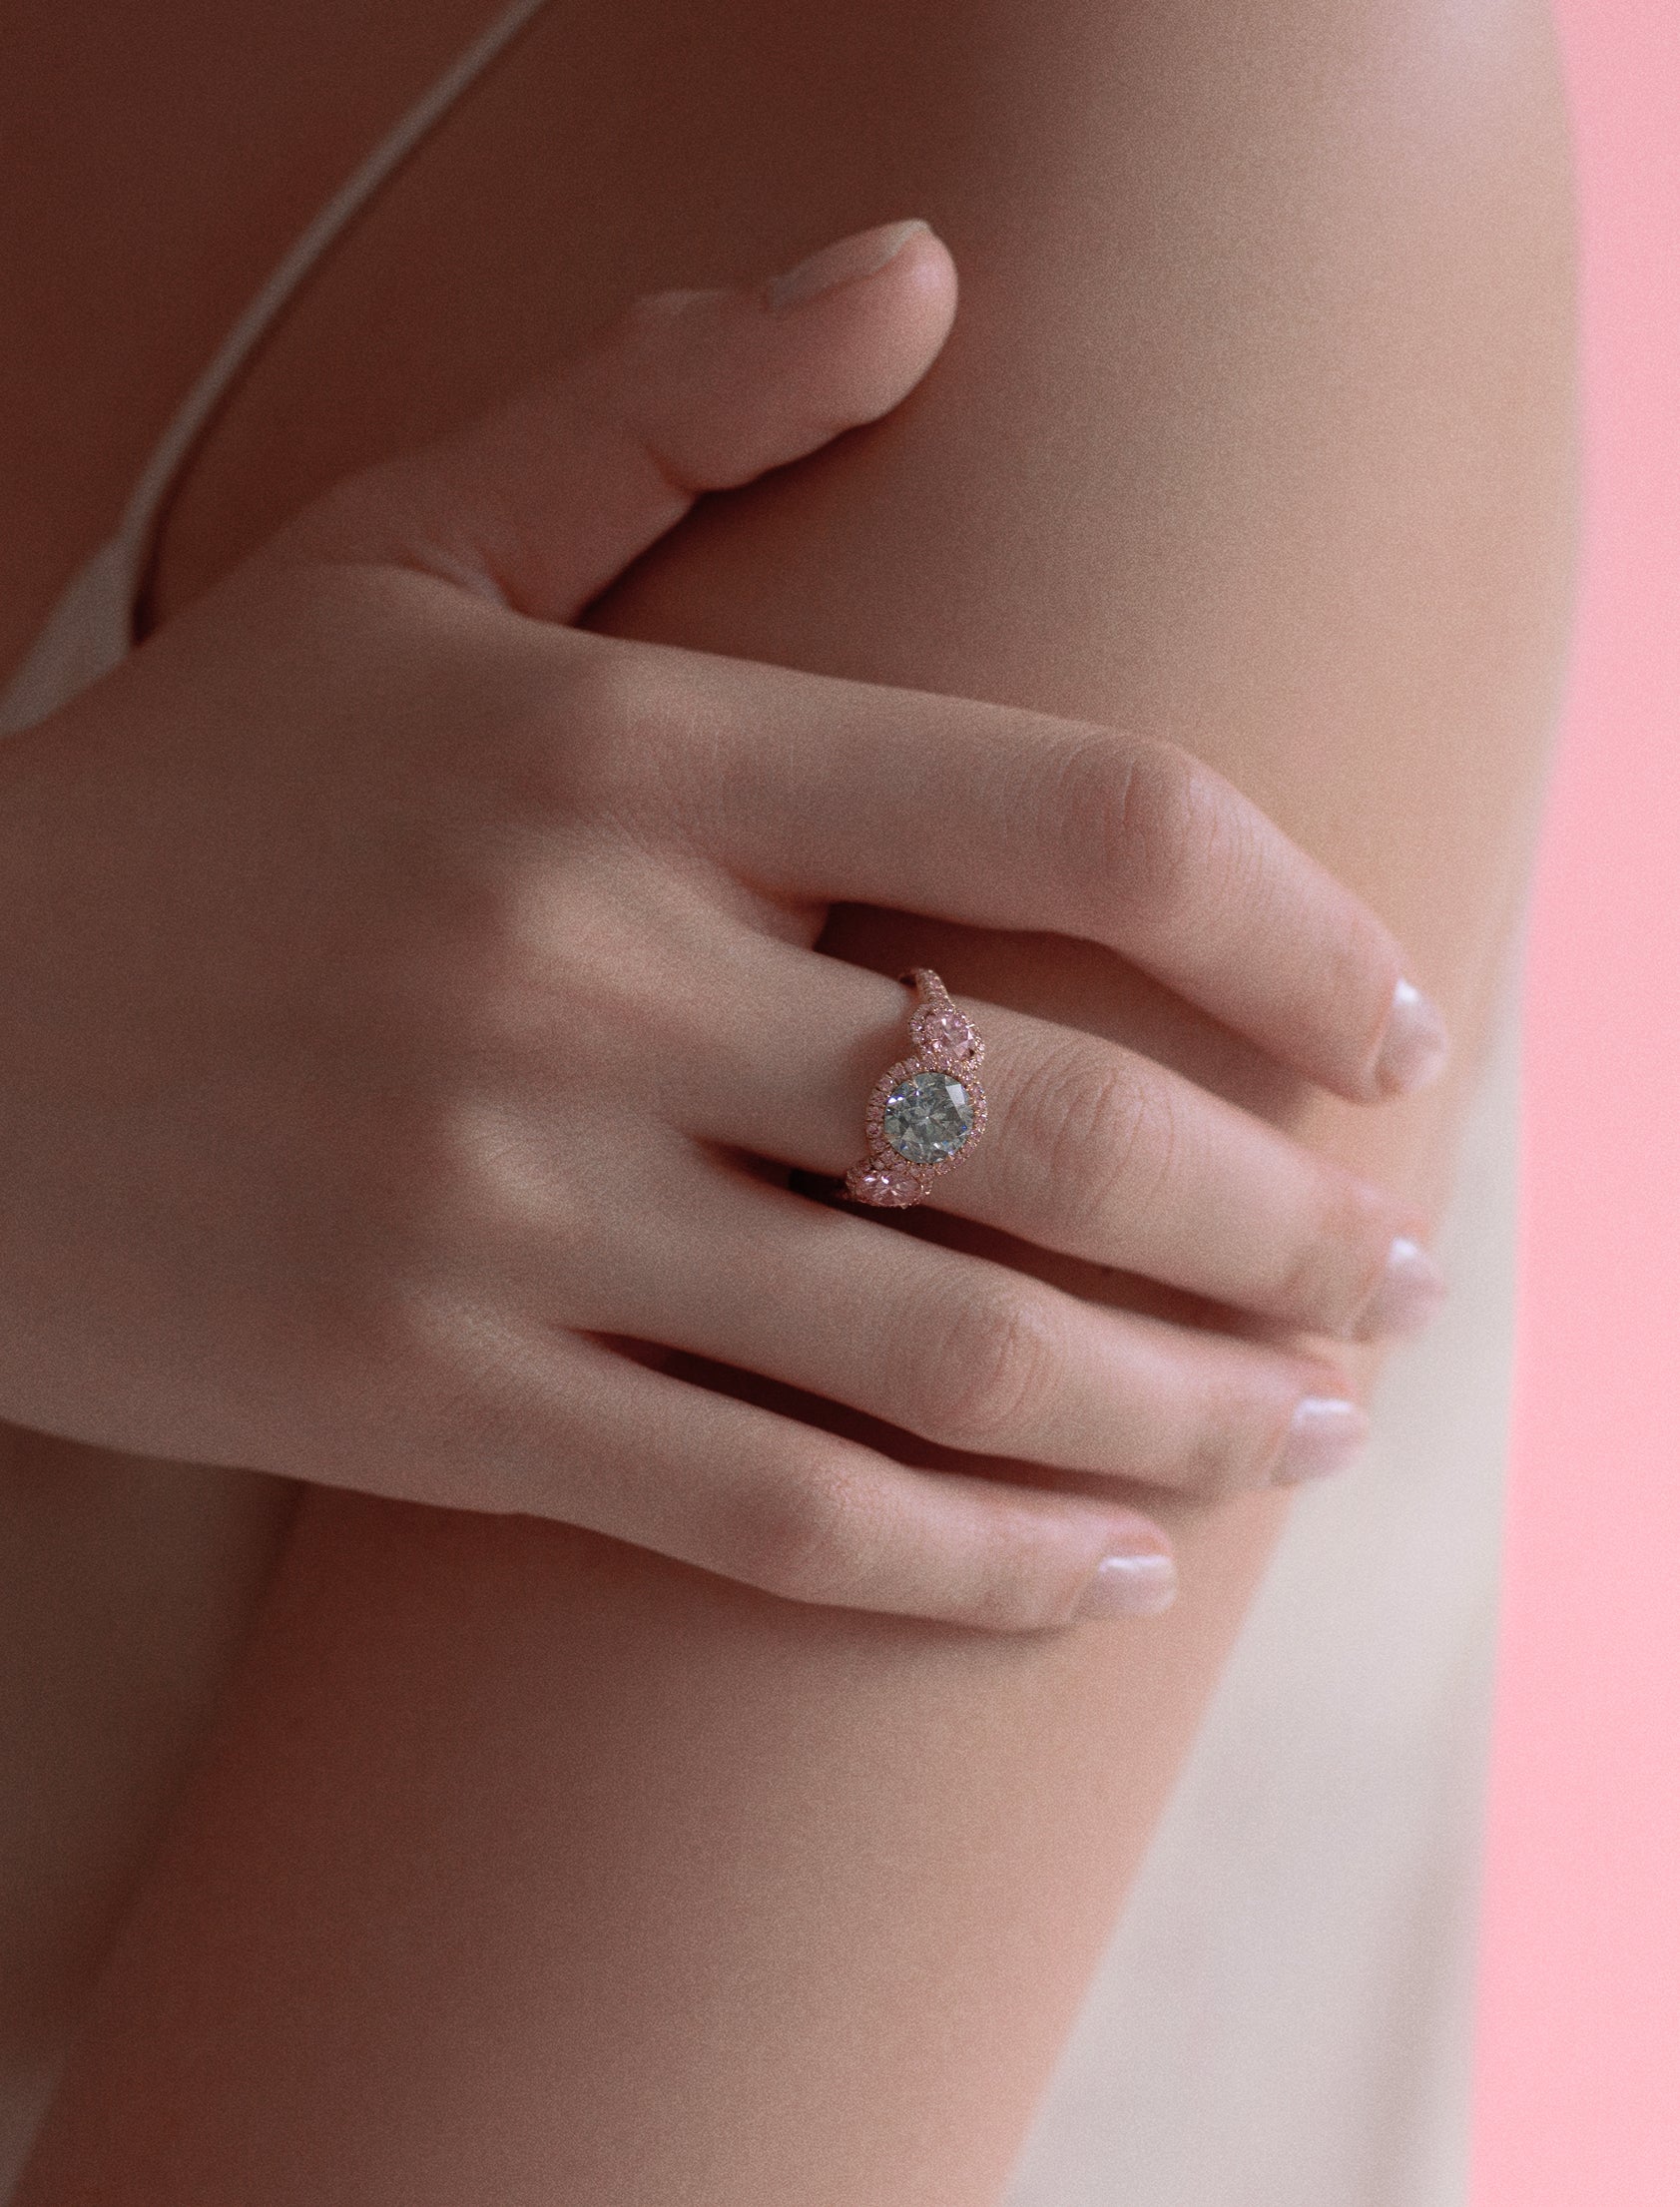 Argyle Pink™ Diamond and Gray Round Diamond Three Stone Ring - Pink Diamonds, J FINE - J Fine, Rings - Pink Diamond Jewelry, argyle-pink™-diamond-and-gray-round-diamond-three-stone-ring-b